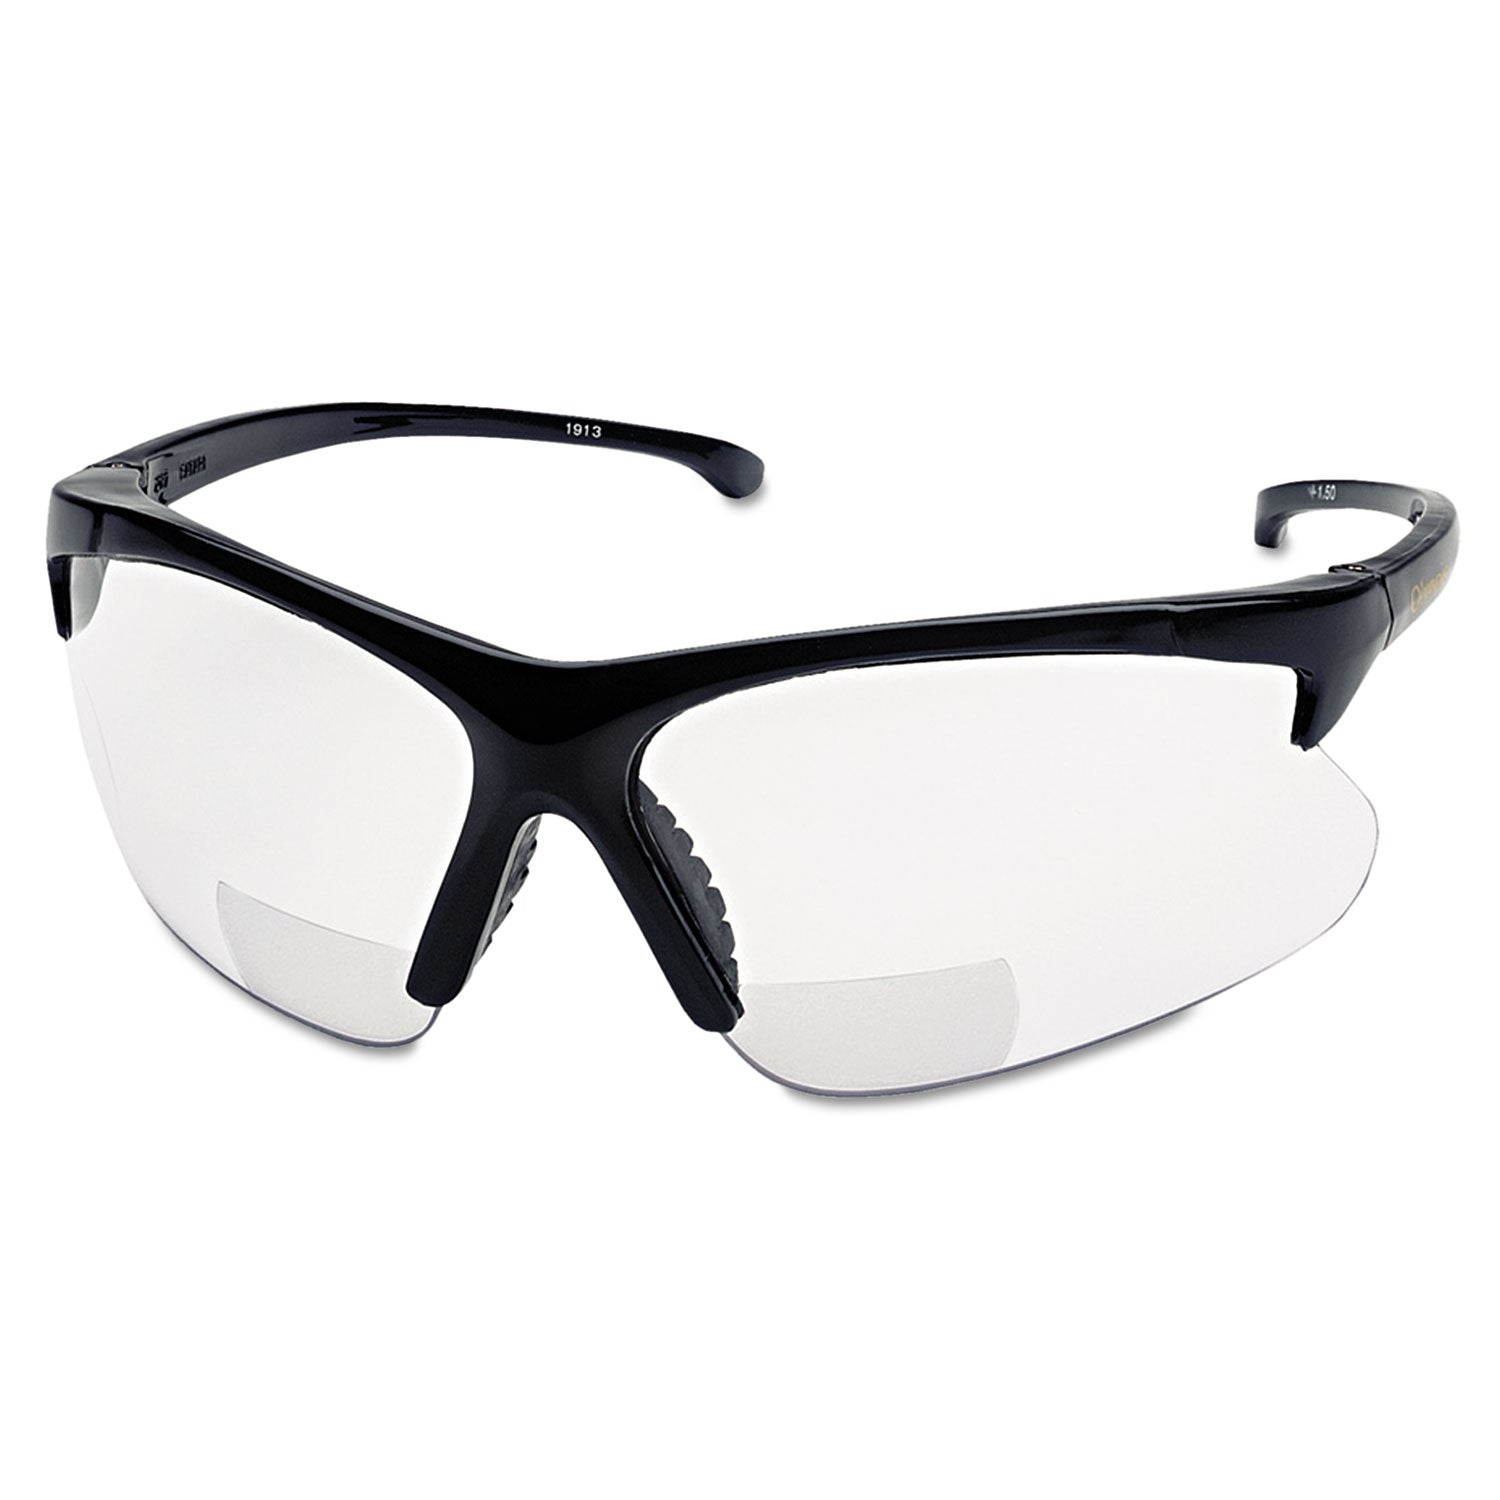 v60-30-06-reader-safety-eyewear-black-frame-clear-lens_smw19879 - 1